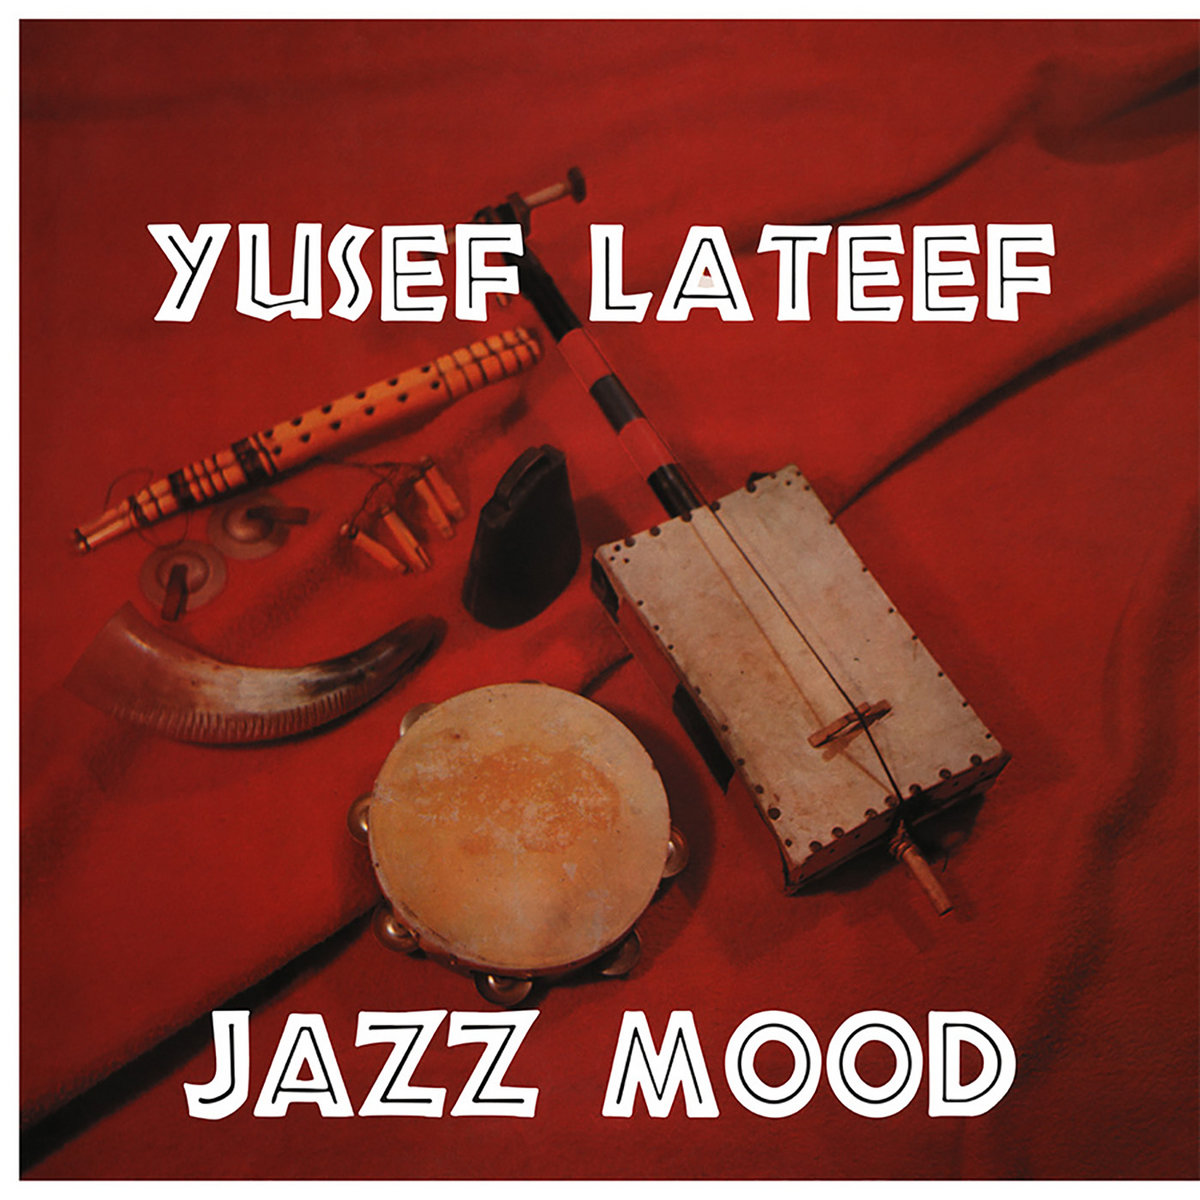 LATEEF, YUSEF - JAZZ MOOD - LP - VINYL 33 TOURS DISQUE VINYLE LP PARIS MONTPELLIER GROUND ZERO PLATINE PRO-JECT ALBUM TOURNE-DISQUE MUSICAL FIDELITY KANTU YU BRINGHS ORTOFON 45 TOURS SINGLES ALBUM ACHETER UNE PLATINE VINYLS BOUTIQUE PHYSIQUE DISQUAIRE MAGASIN CENTRE VILLE INDES INDIE RECORD STORE INDEPENDENT INDEPENDANT